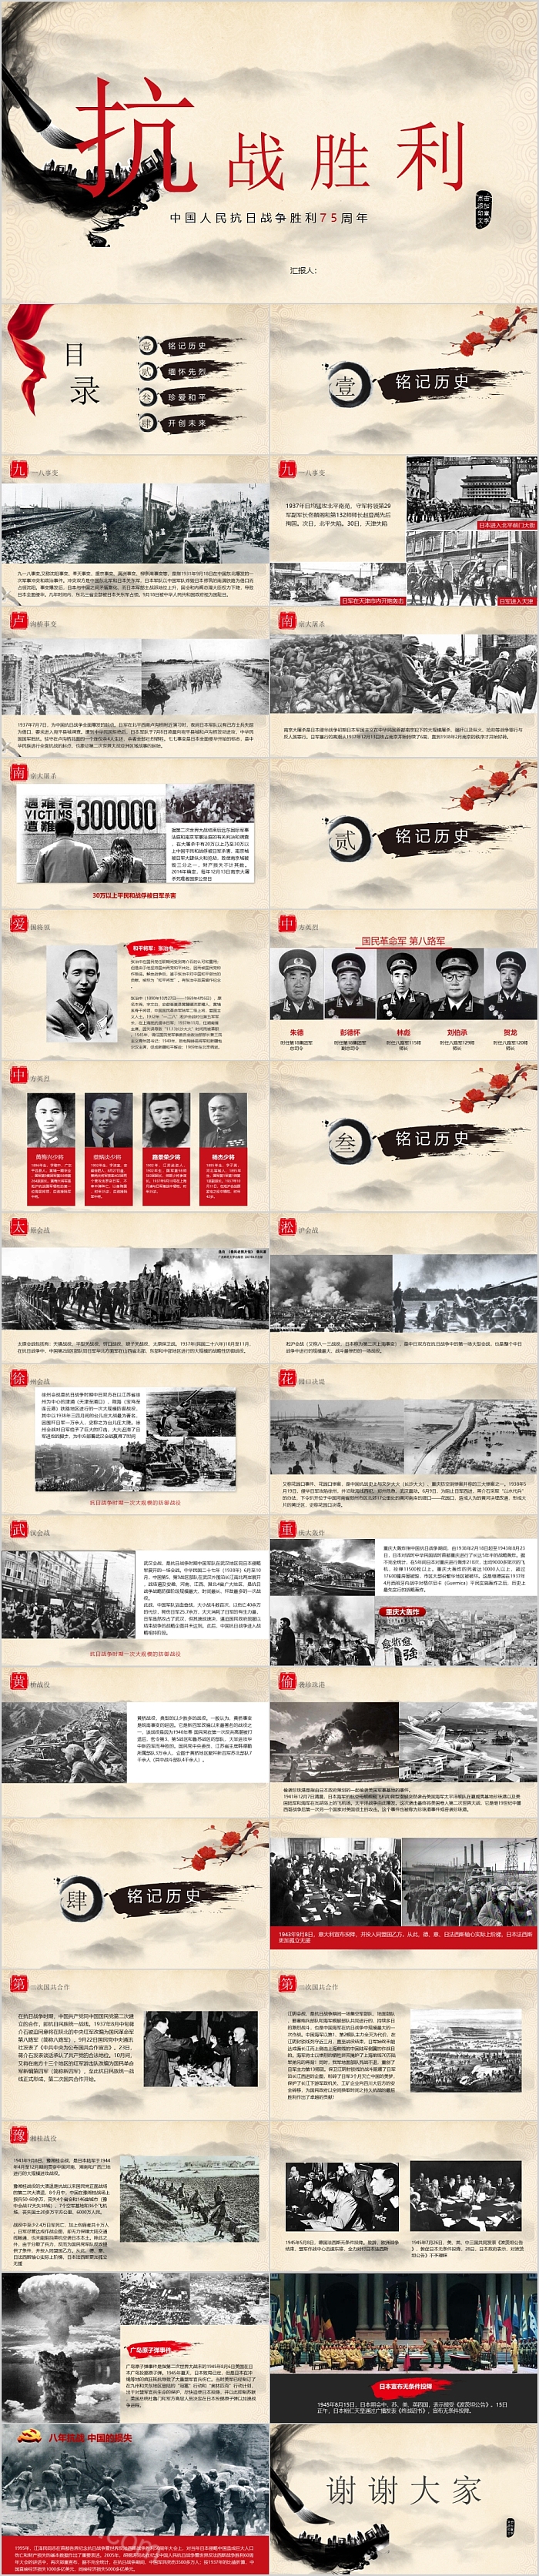 中国人民民抗日战争胜利纪念日